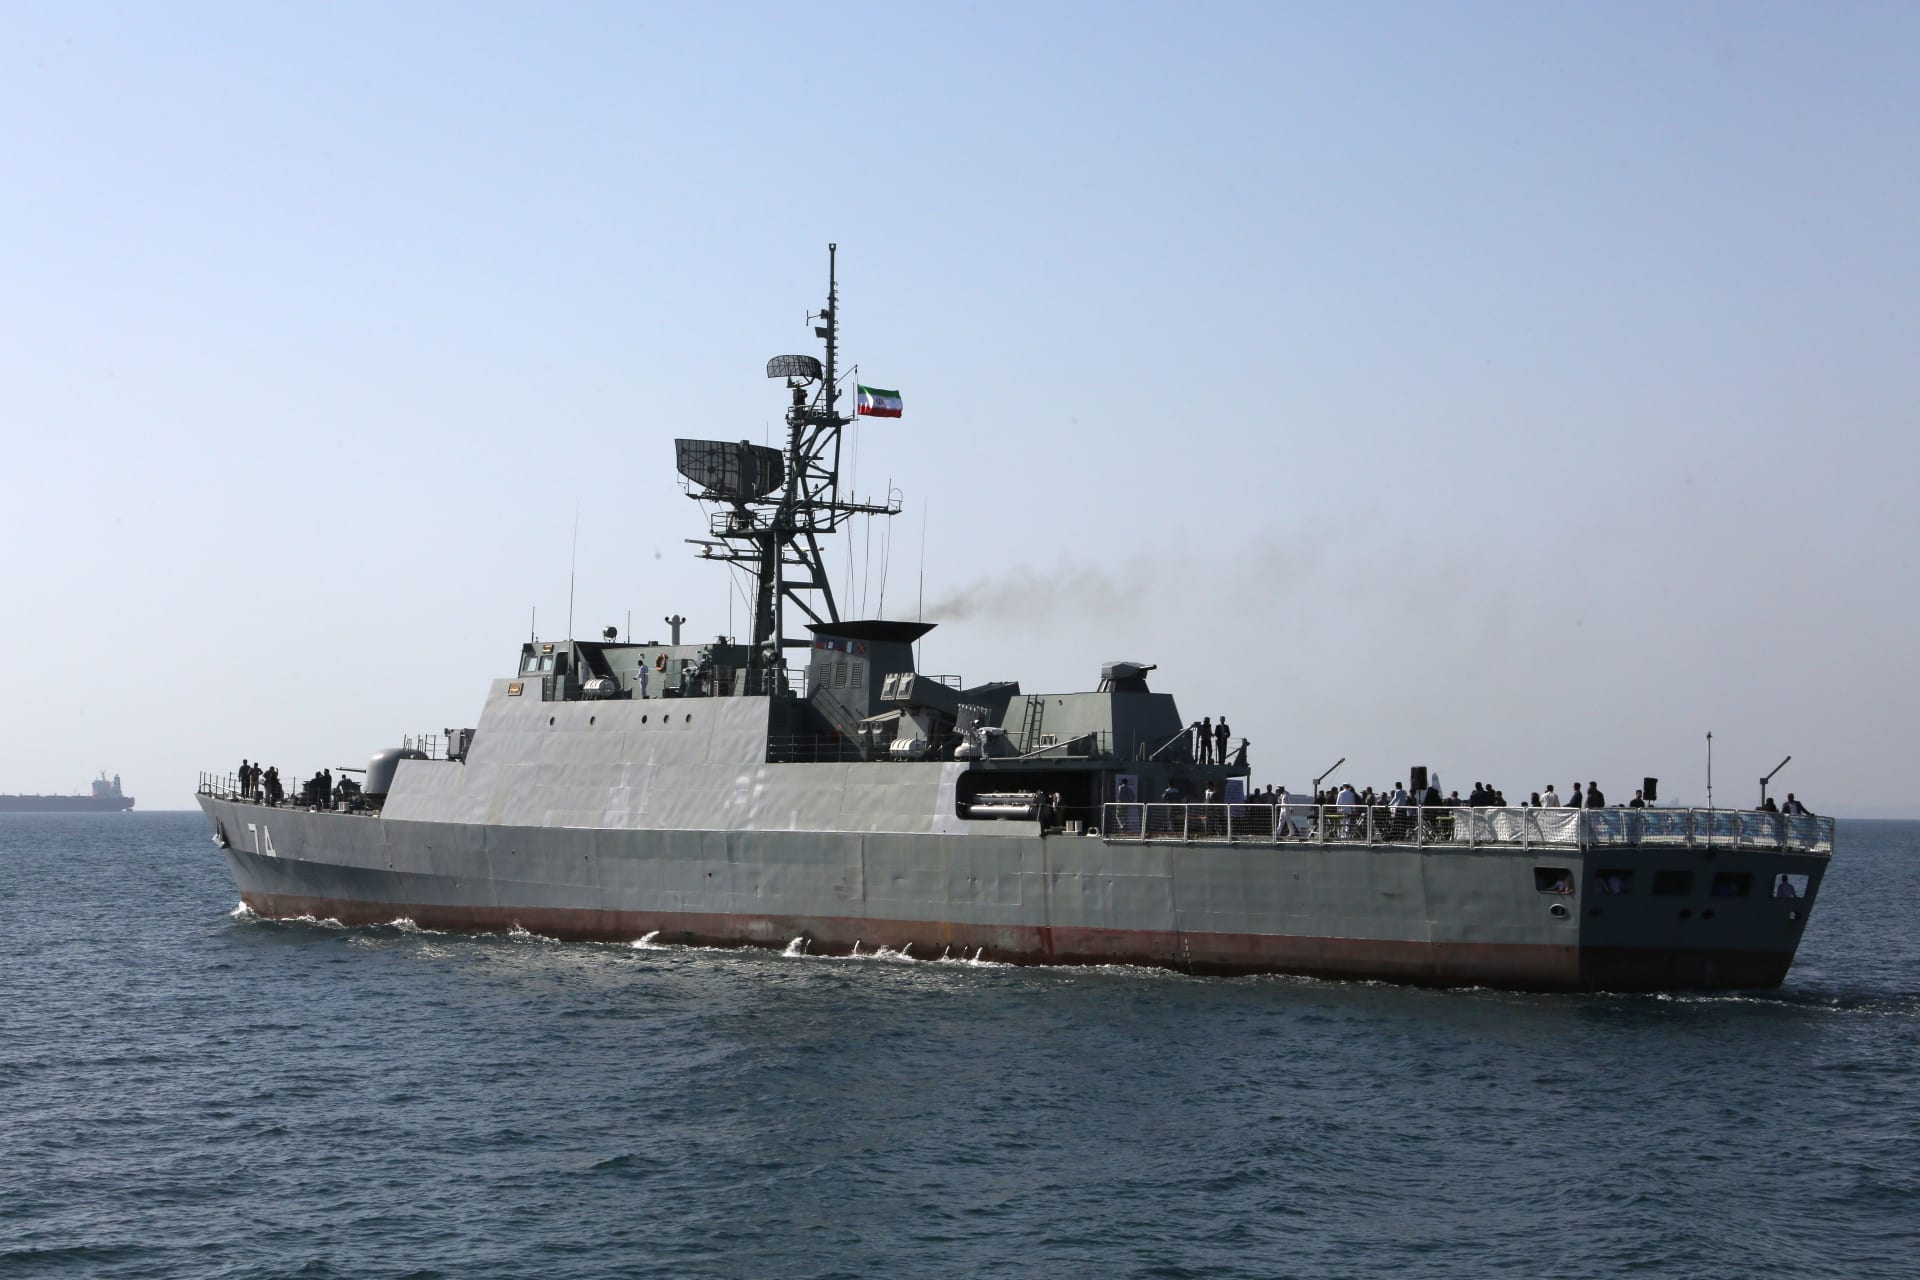 وزير الدفاع الإيراني يحذر من "خليج غير آمن" لجميع دول المنطقة